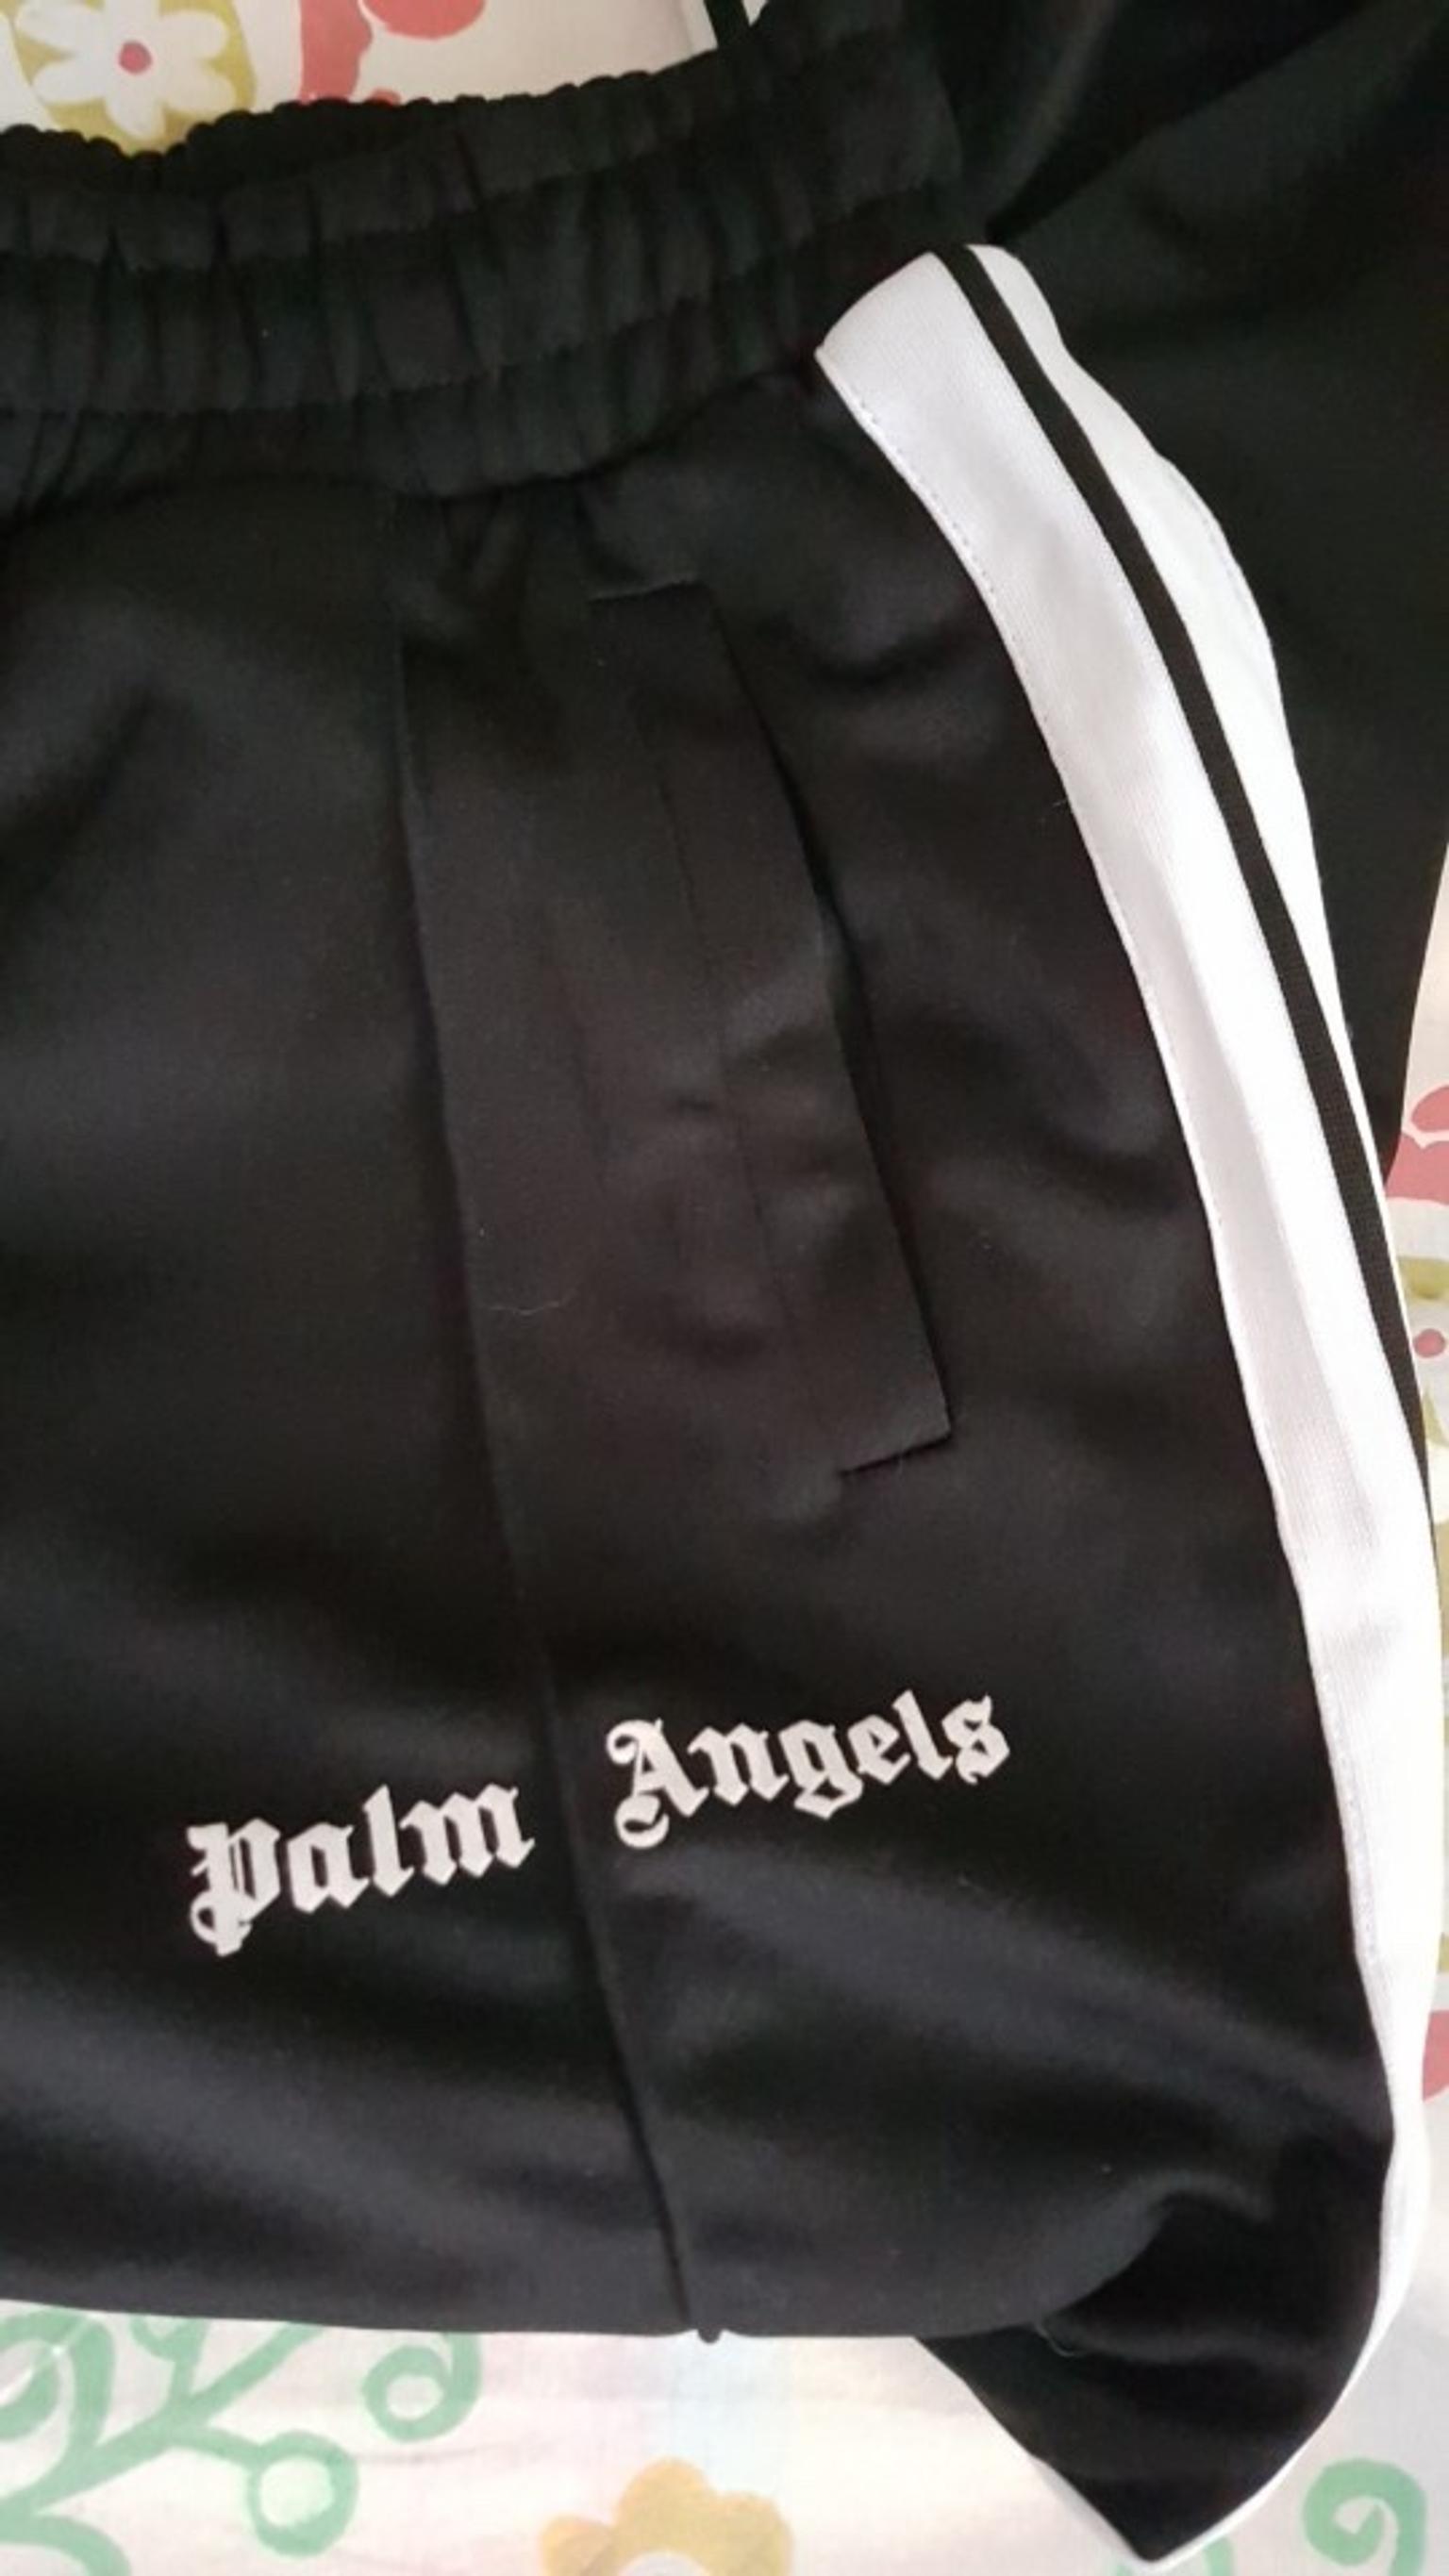 palm angels fake t shirt